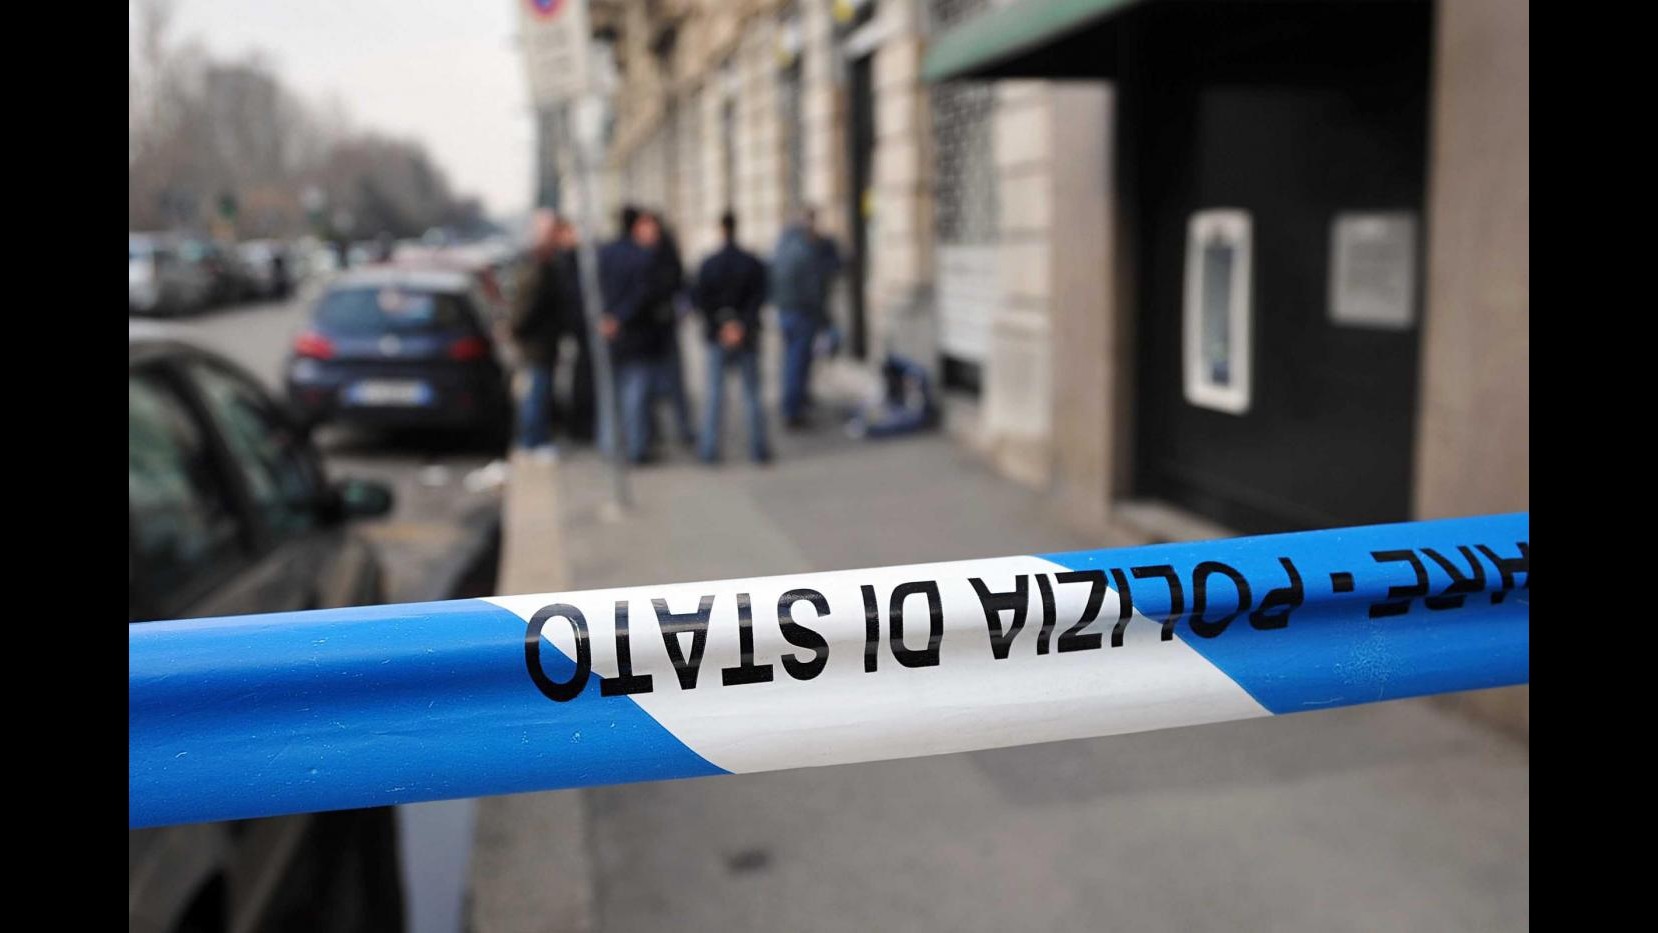 Uomo trovato morto nel milanese: indagini in corso